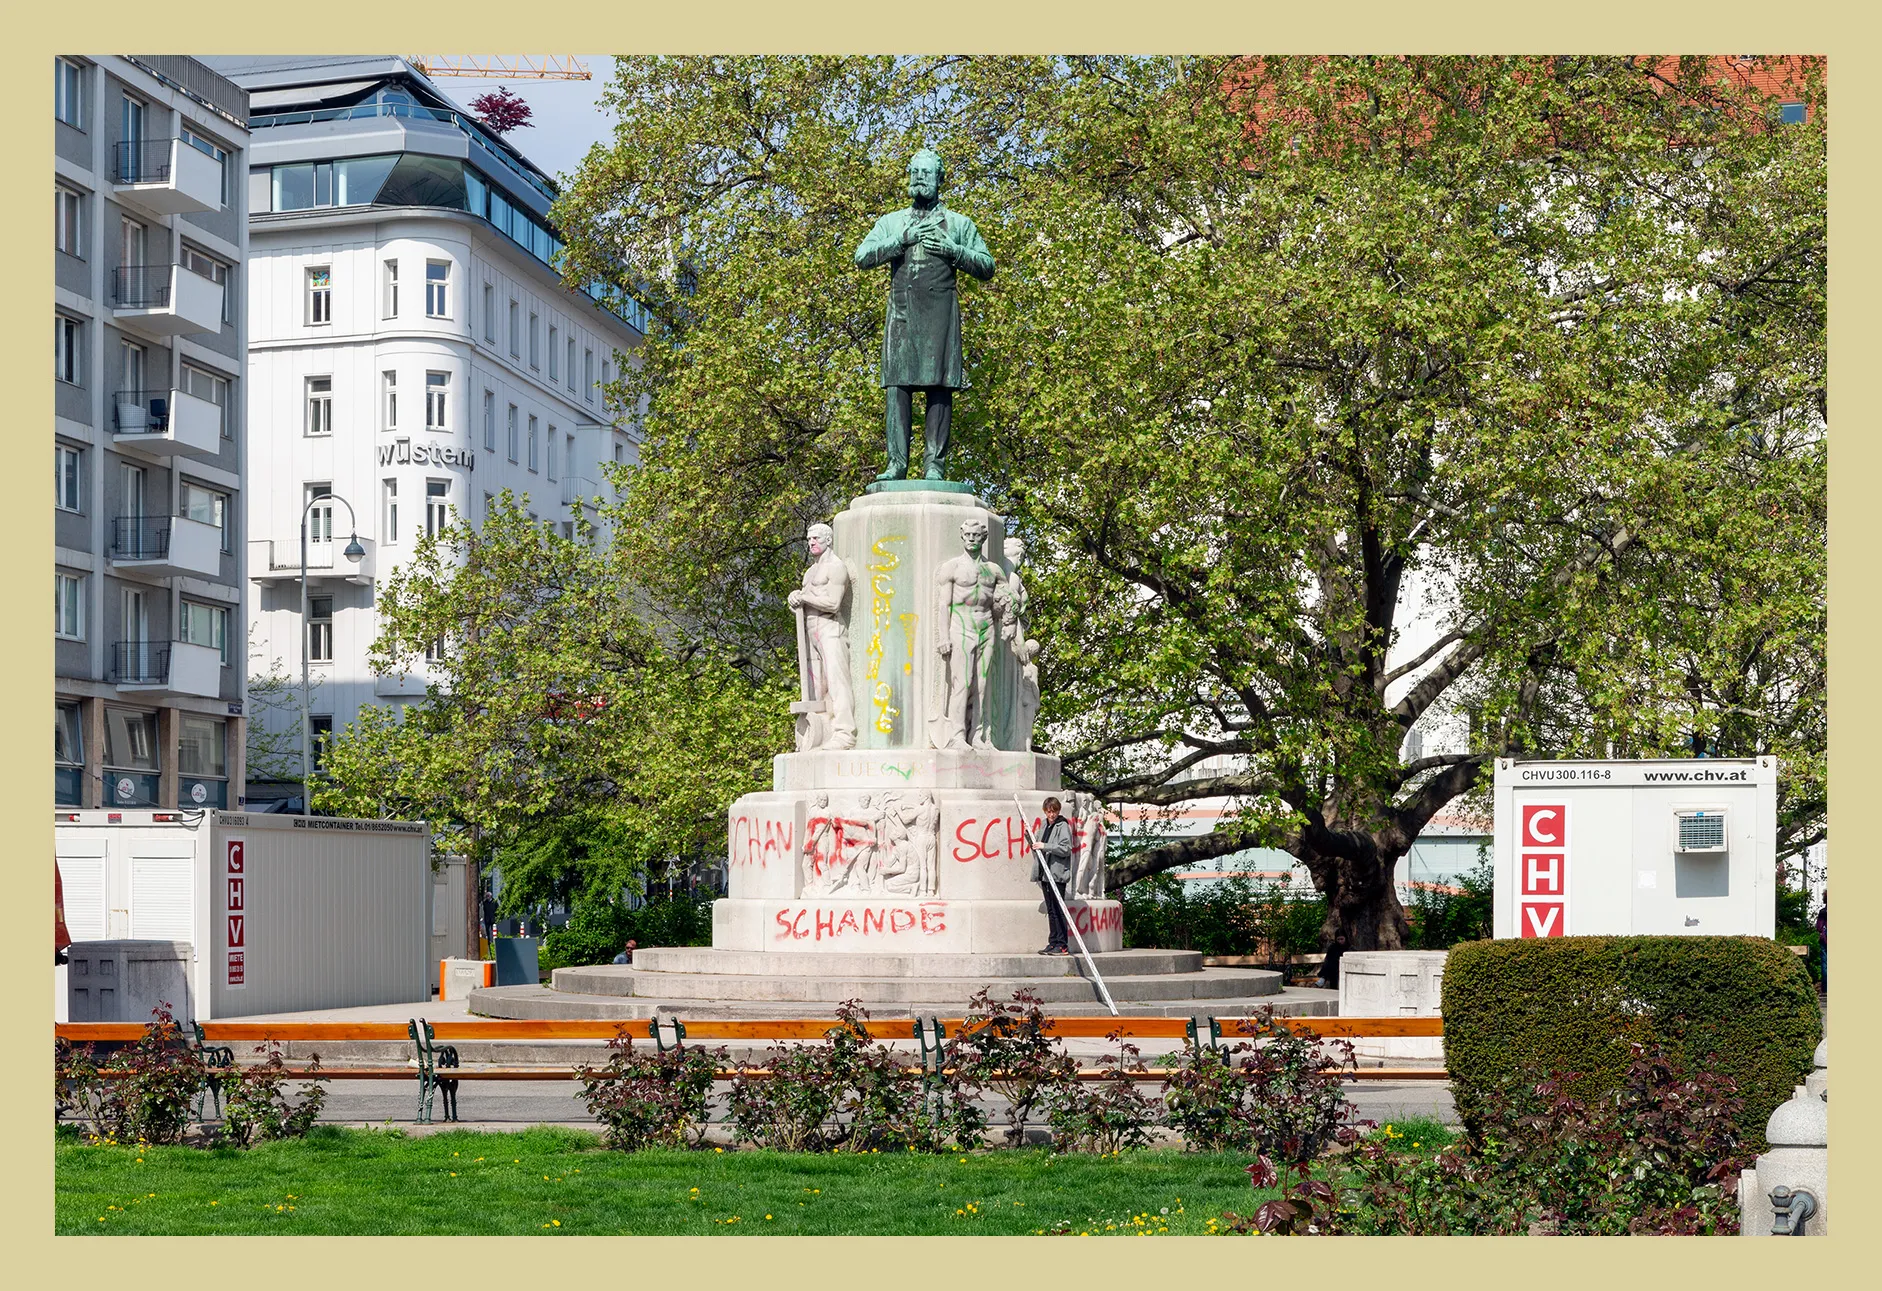 1926 Benennung des Platzes an der Ringstraße als Dr.-Karl-Lueger-Platz, 1. Bezirk – unkommentiert, und Bronzestatue auf Steinsockel, Dr.-Karl-Lueger-Platz, 1. Bezirk